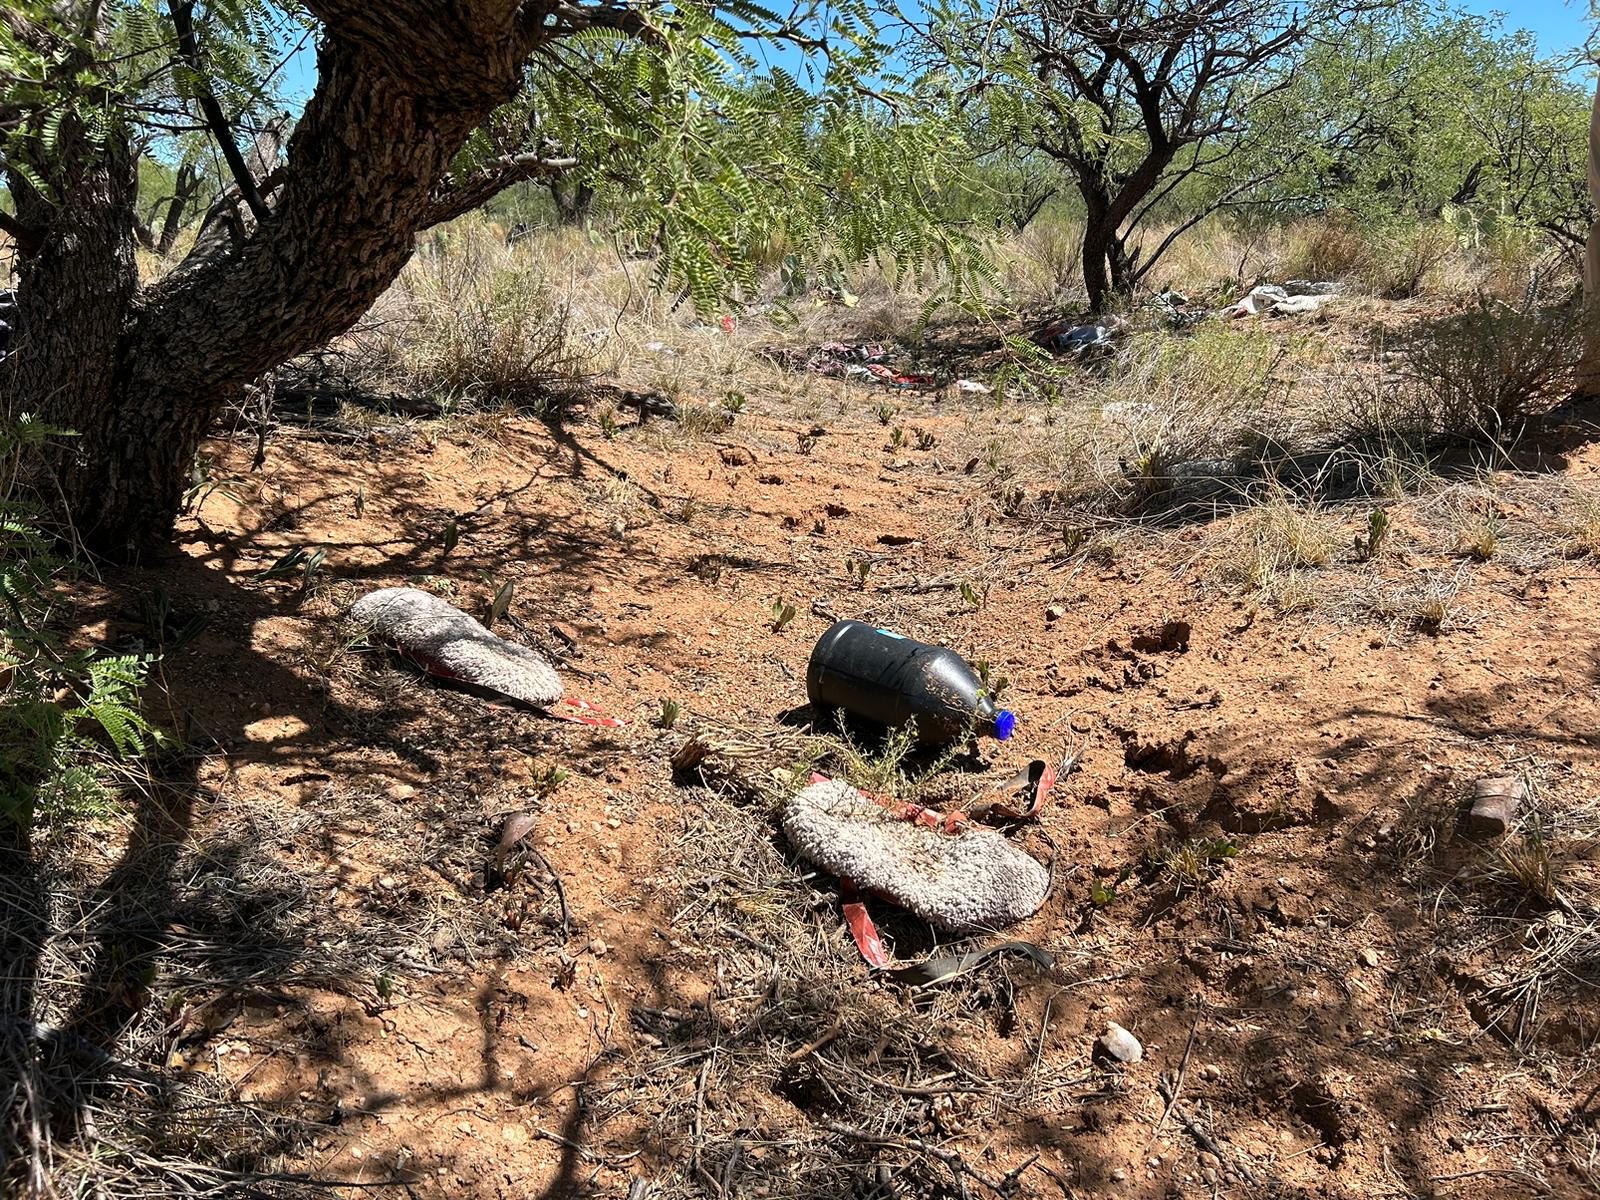 Objetos dejados atrás, como garrafas de agua vacías, evidencian el tránsito de muchas personas —provenientes de México— a través del desierto de Arizona en busca de una mejor vida en Estados Unidos. (Foto: Peter Tran) 